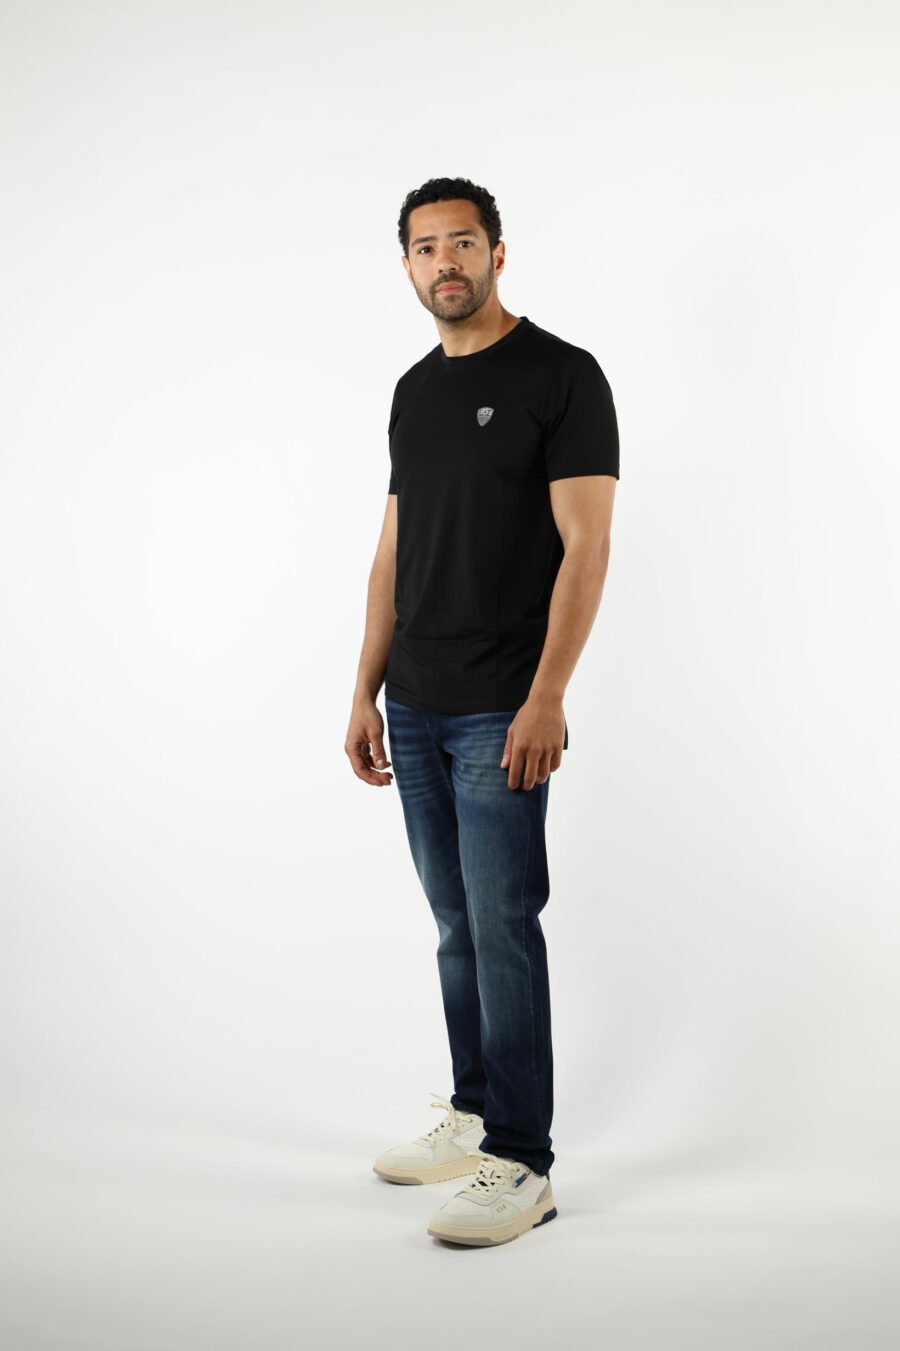 Camiseta negra con minilogo "lux identity" escudo - 110836